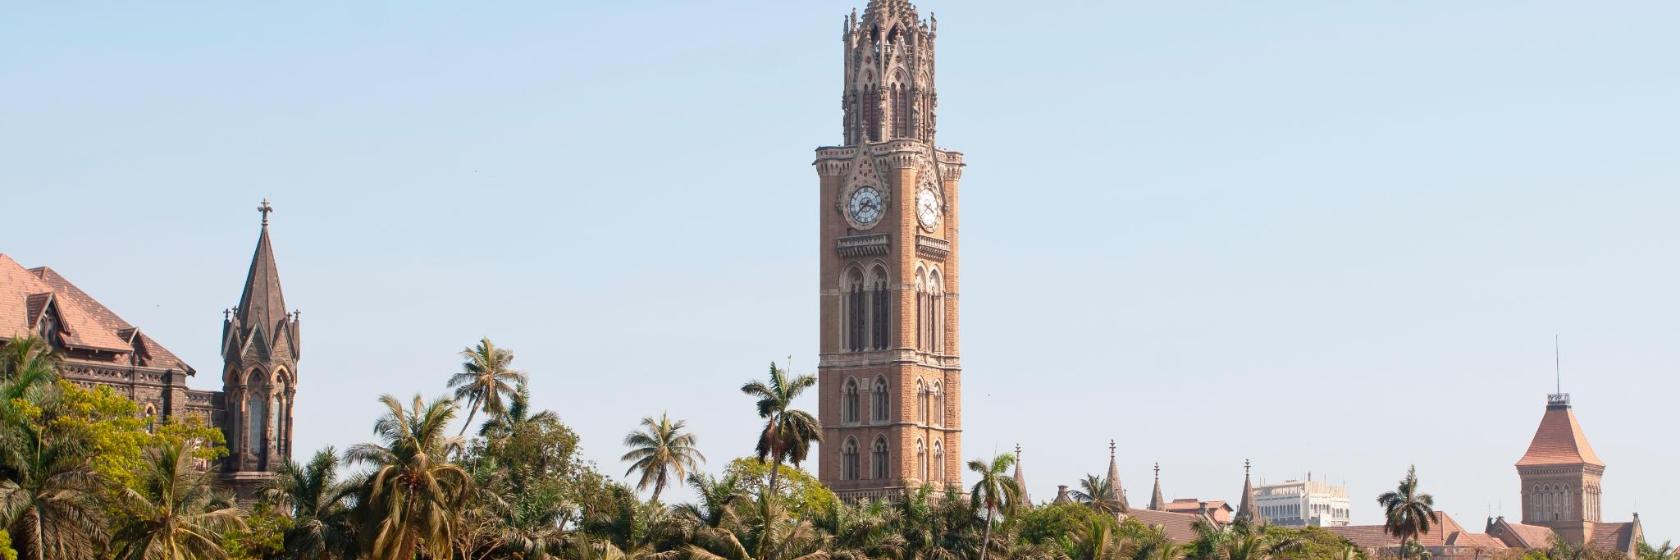 أفضل 10 فنادق بالقرب من Rajabai Clock Tower في مومباي، الهند